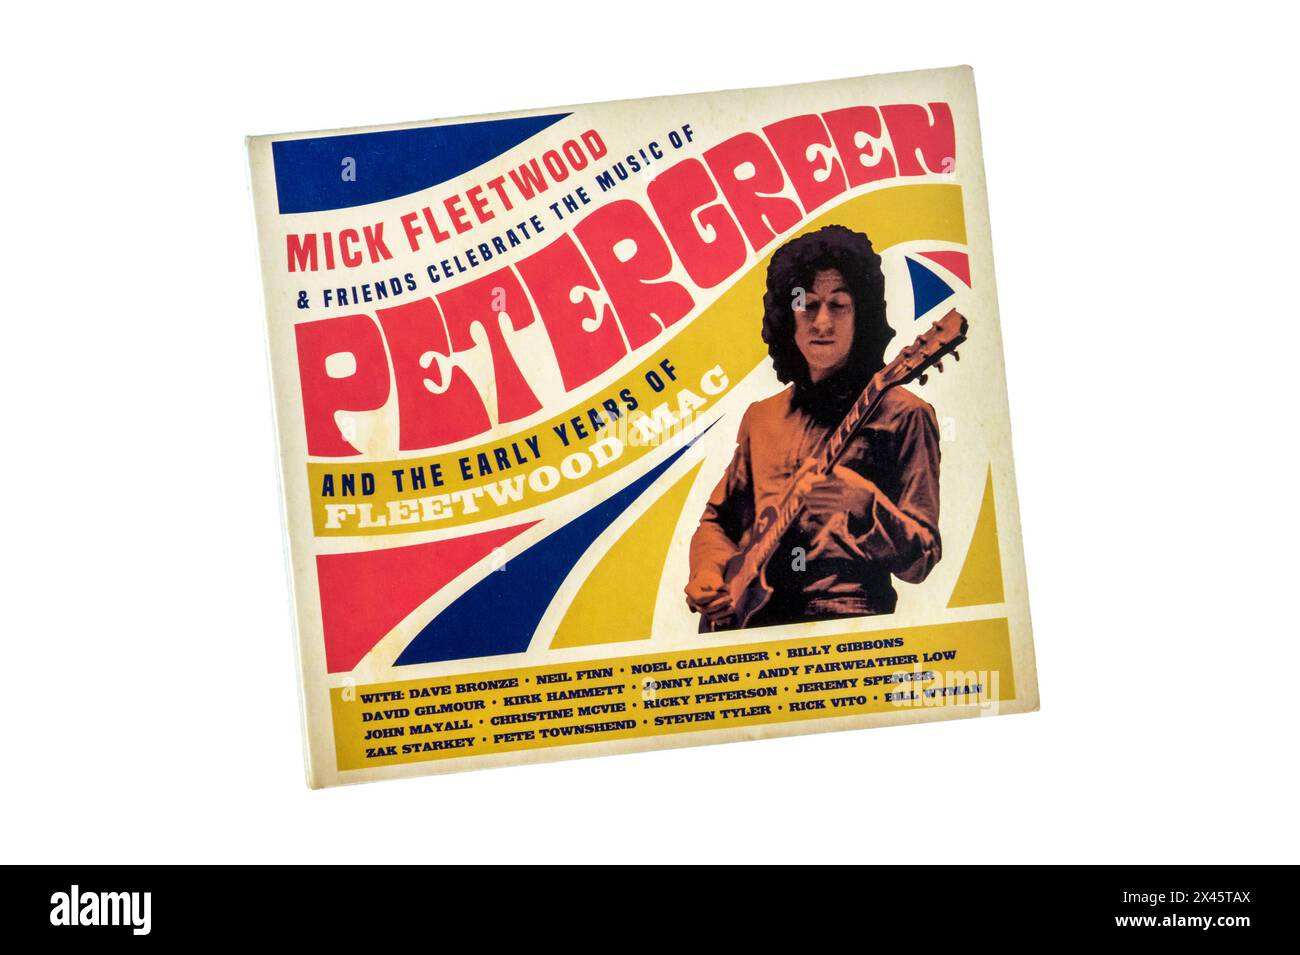 Double CD de Mick Fleetwood & Fiends célèbrent la musique de Peter Green et les premières années de Fleetwood Mac. Live au London palladium février 2020. Banque D'Images